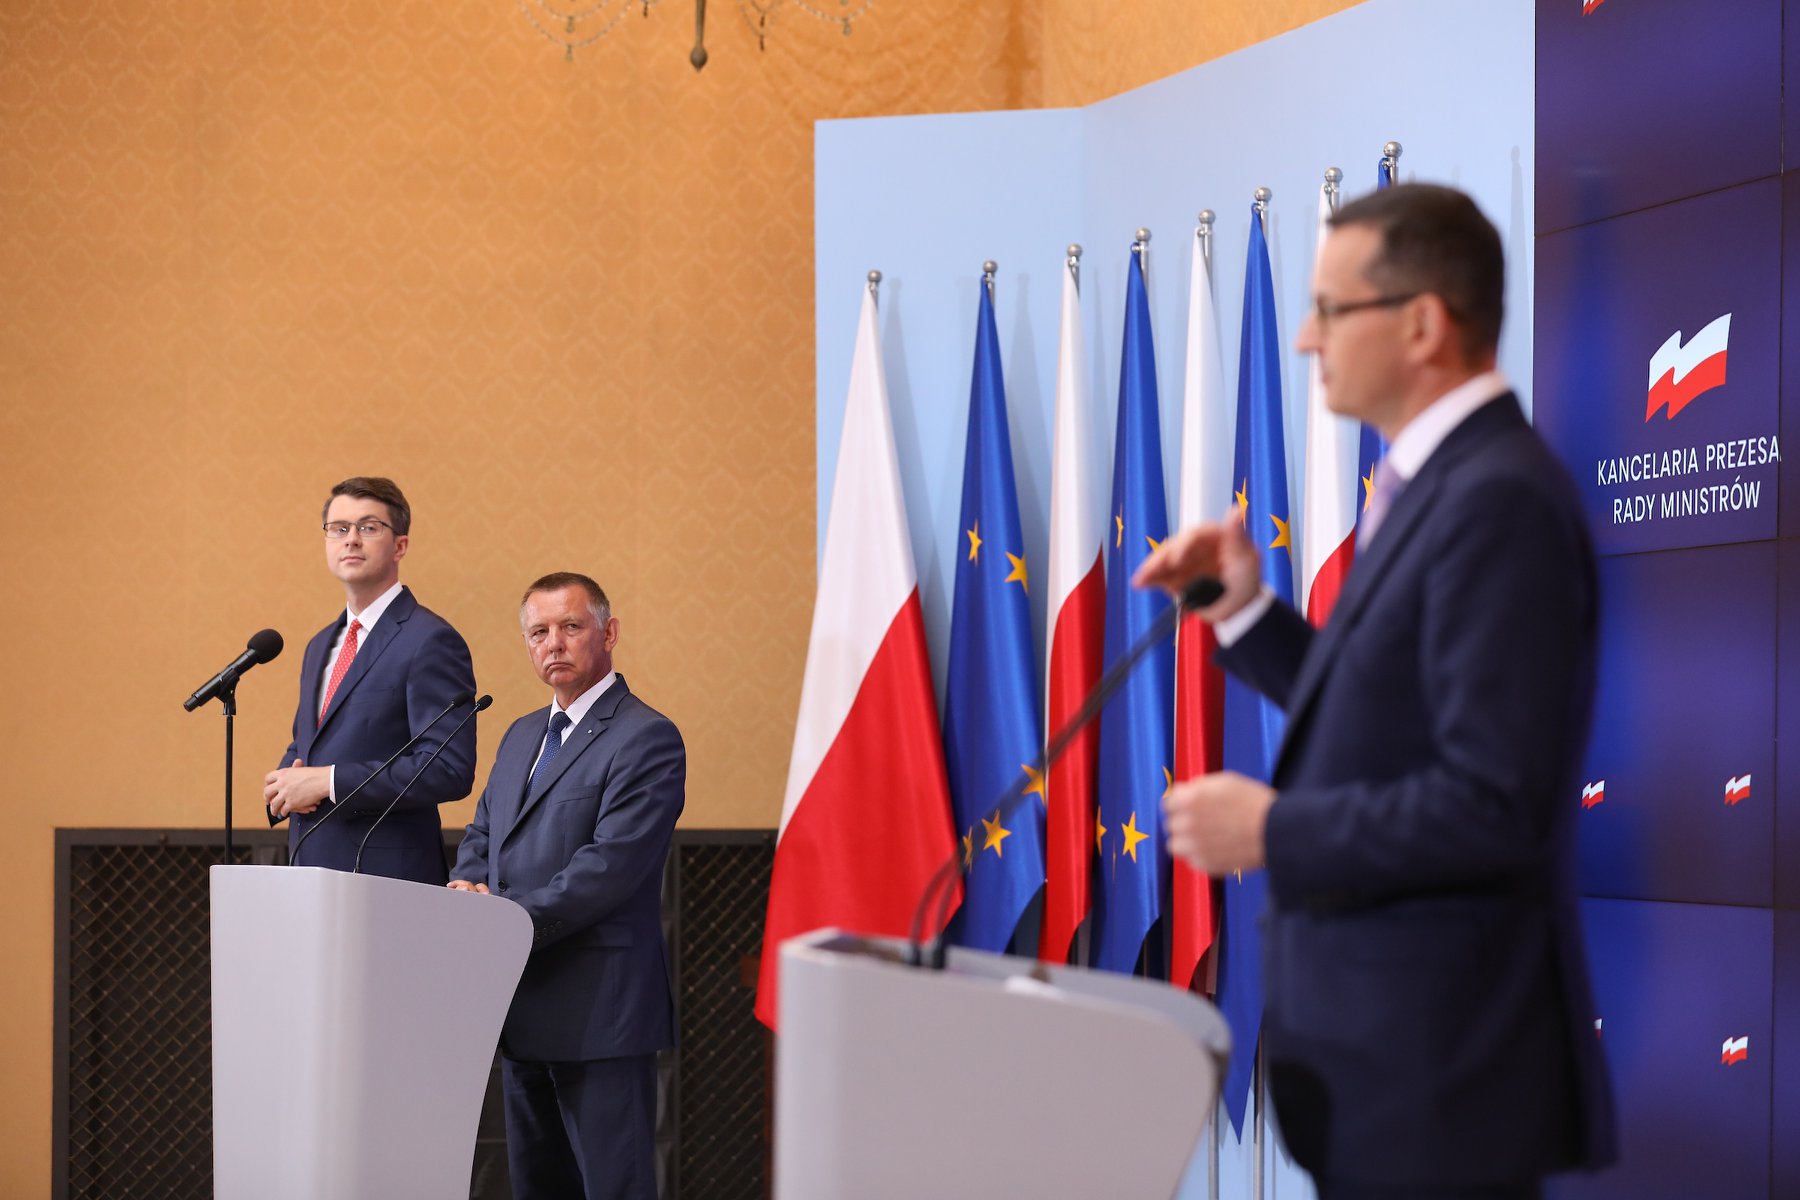 Rada Ministrów przyjęła projekt zrównoważonego budżetu na 2020 rok. Nie zaciągamy zobowiązań wobec kolejnych pokoleń Polaków. Dbamy o stabilność finansową Polski, a jednocześnie cały czas realizujemy ambitną politykę prorodzinną i szerokie programy społeczne.